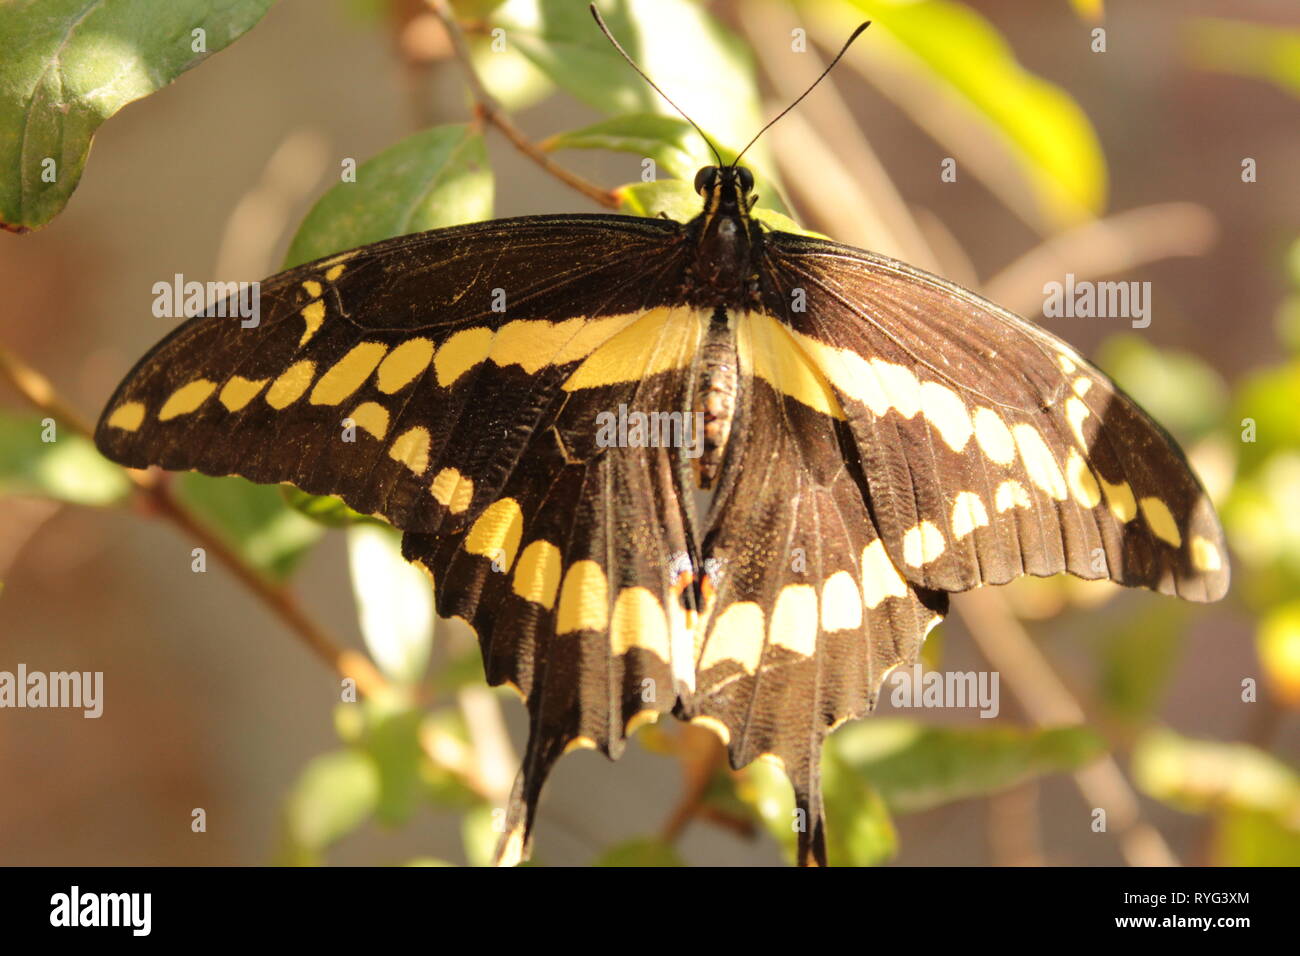 Chiudere de mariposa negra con amarillo pasando en onu Arbol de mi jardín, foto tomada con lente ONU 18-55 mm marca canon a plena luz del día Foto Stock